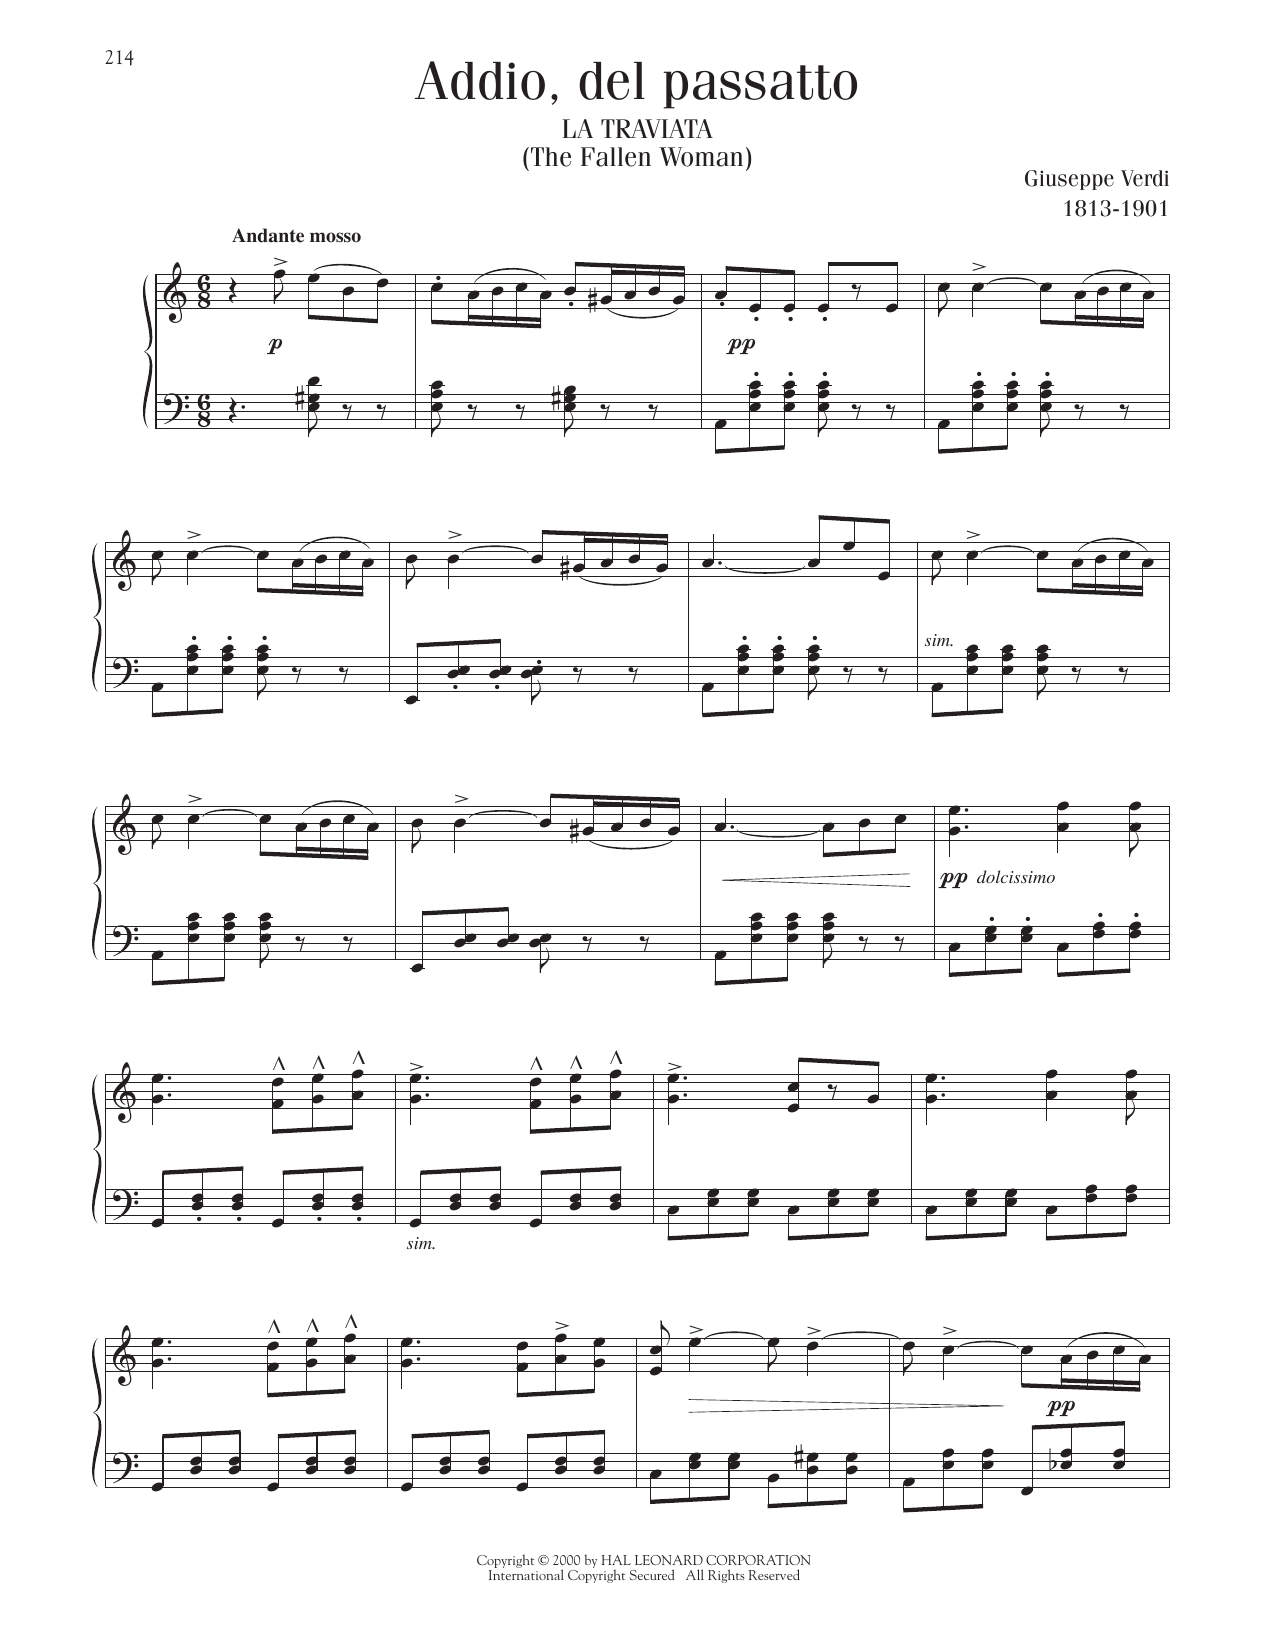 Giuseppe Verdi Addio, Del Passatto Sheet Music Notes & Chords for Piano Solo - Download or Print PDF